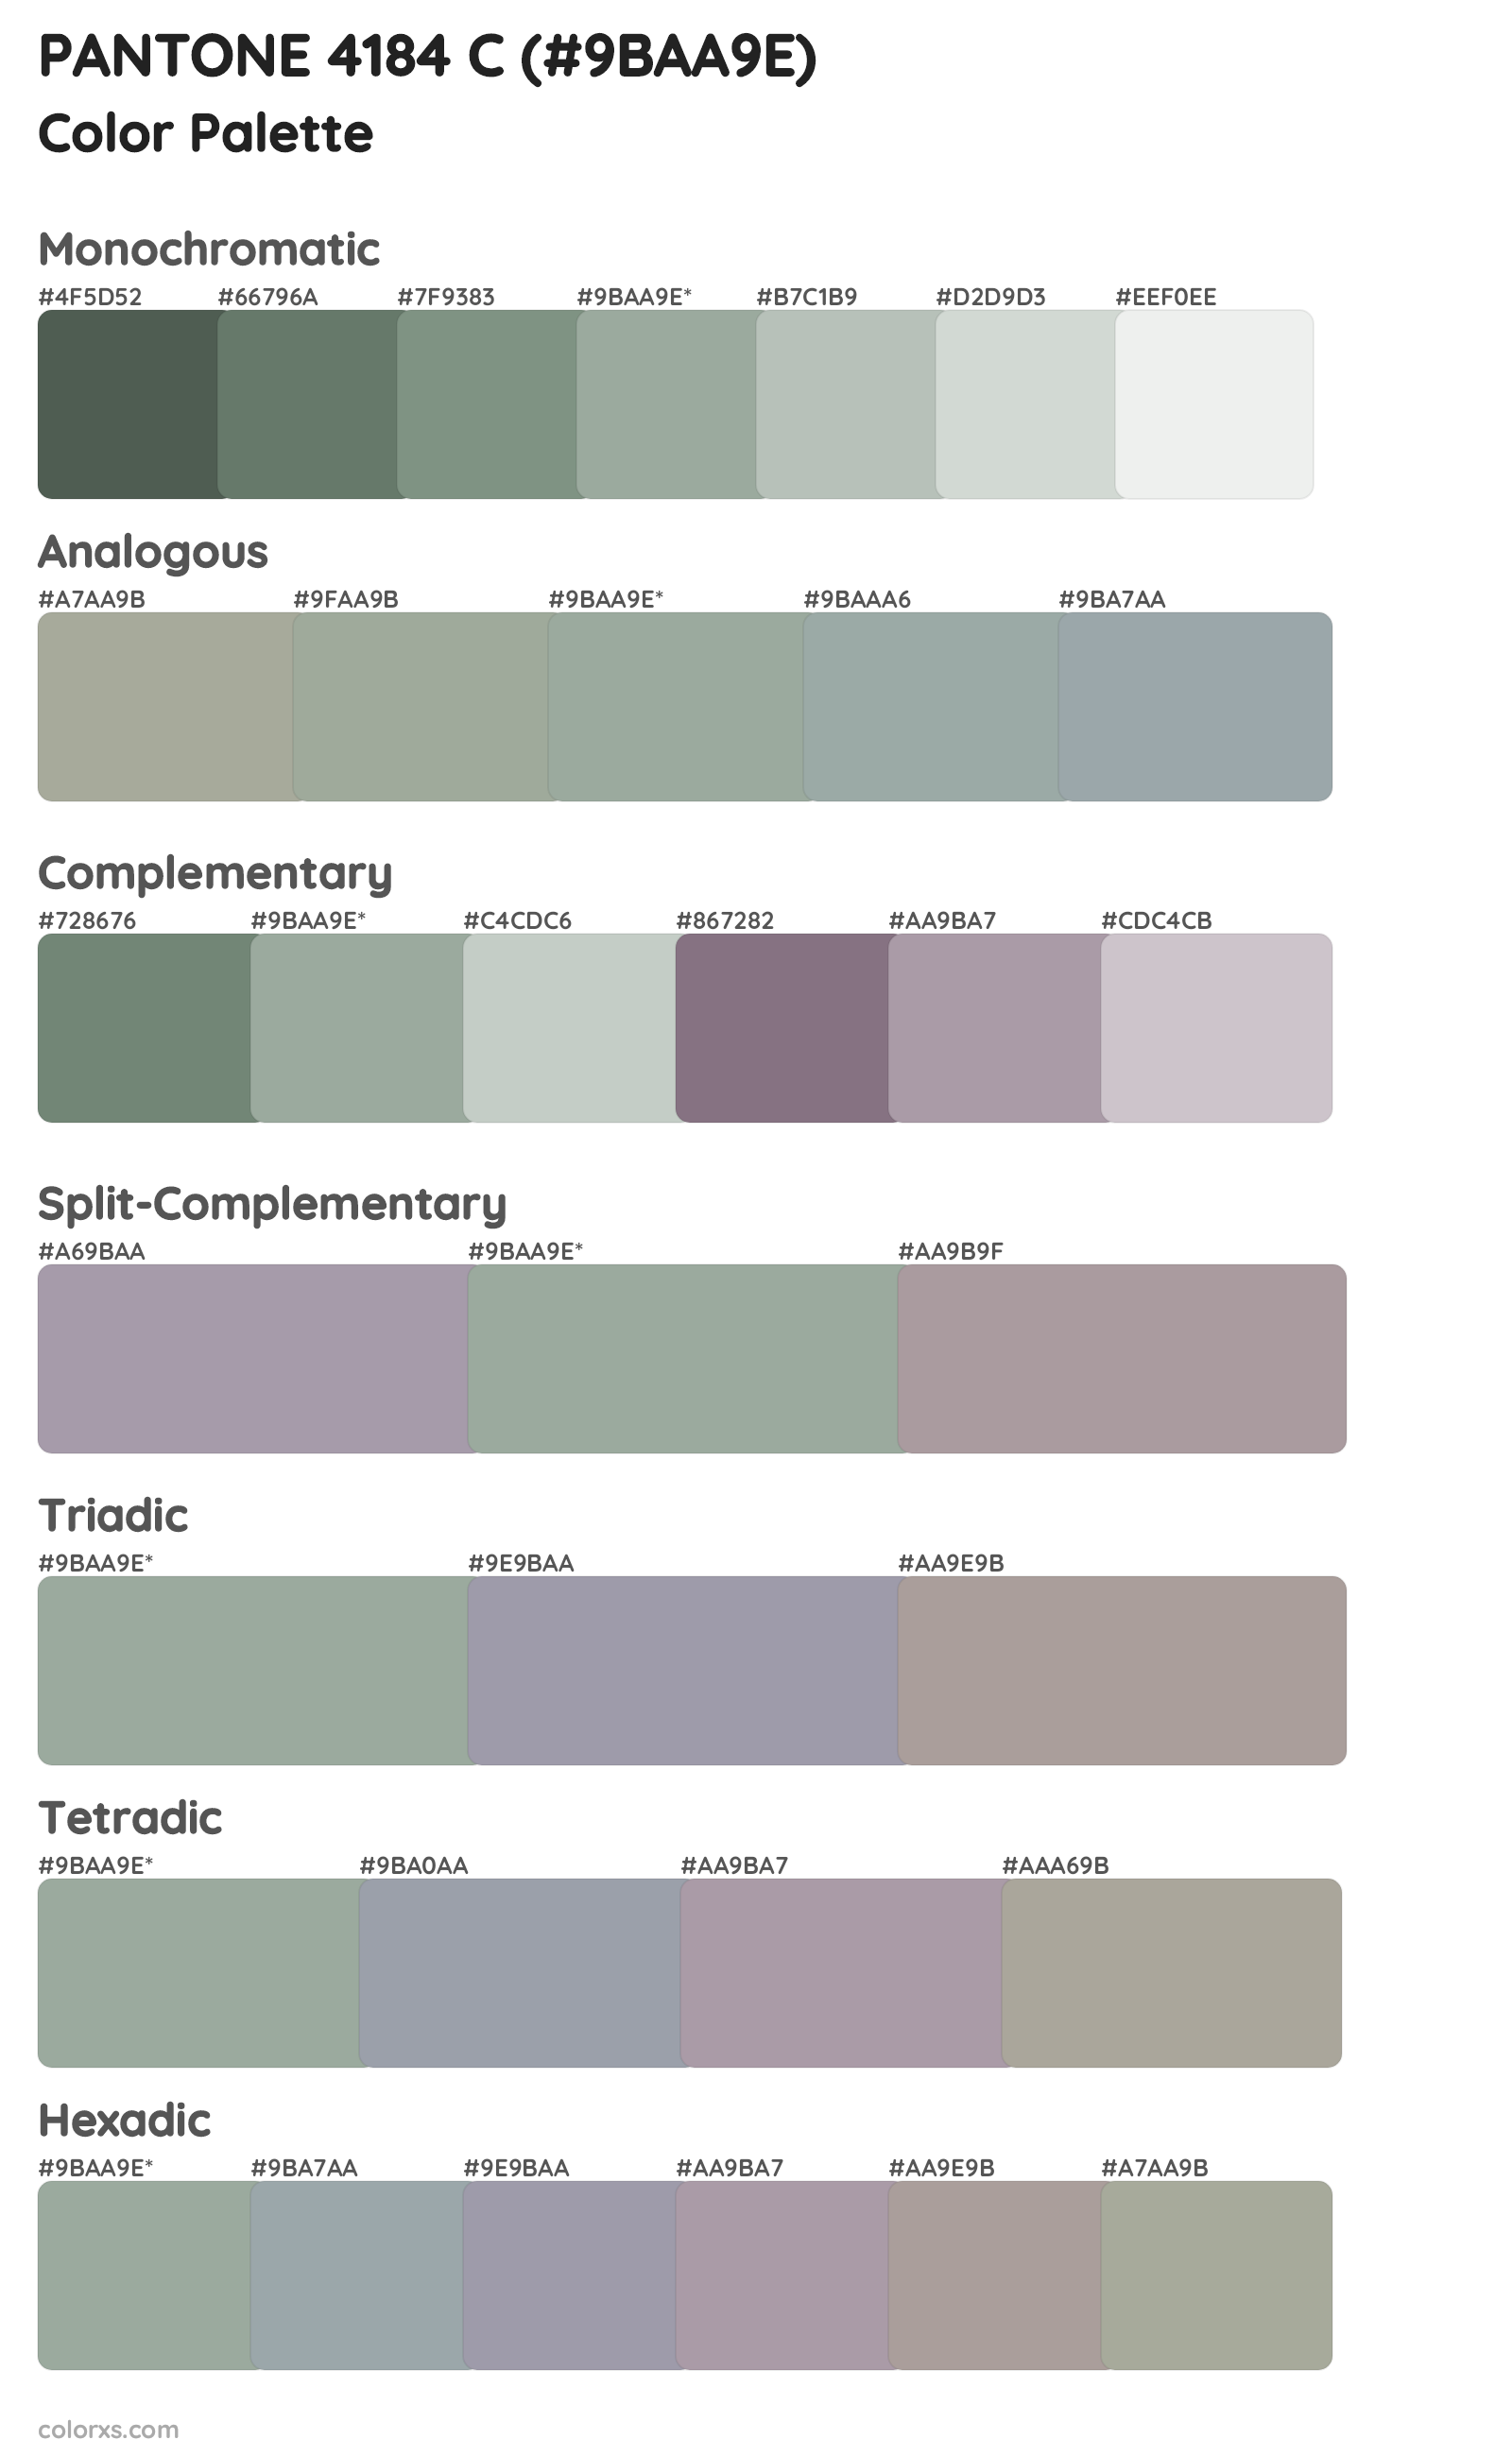 PANTONE 4184 C Color Scheme Palettes